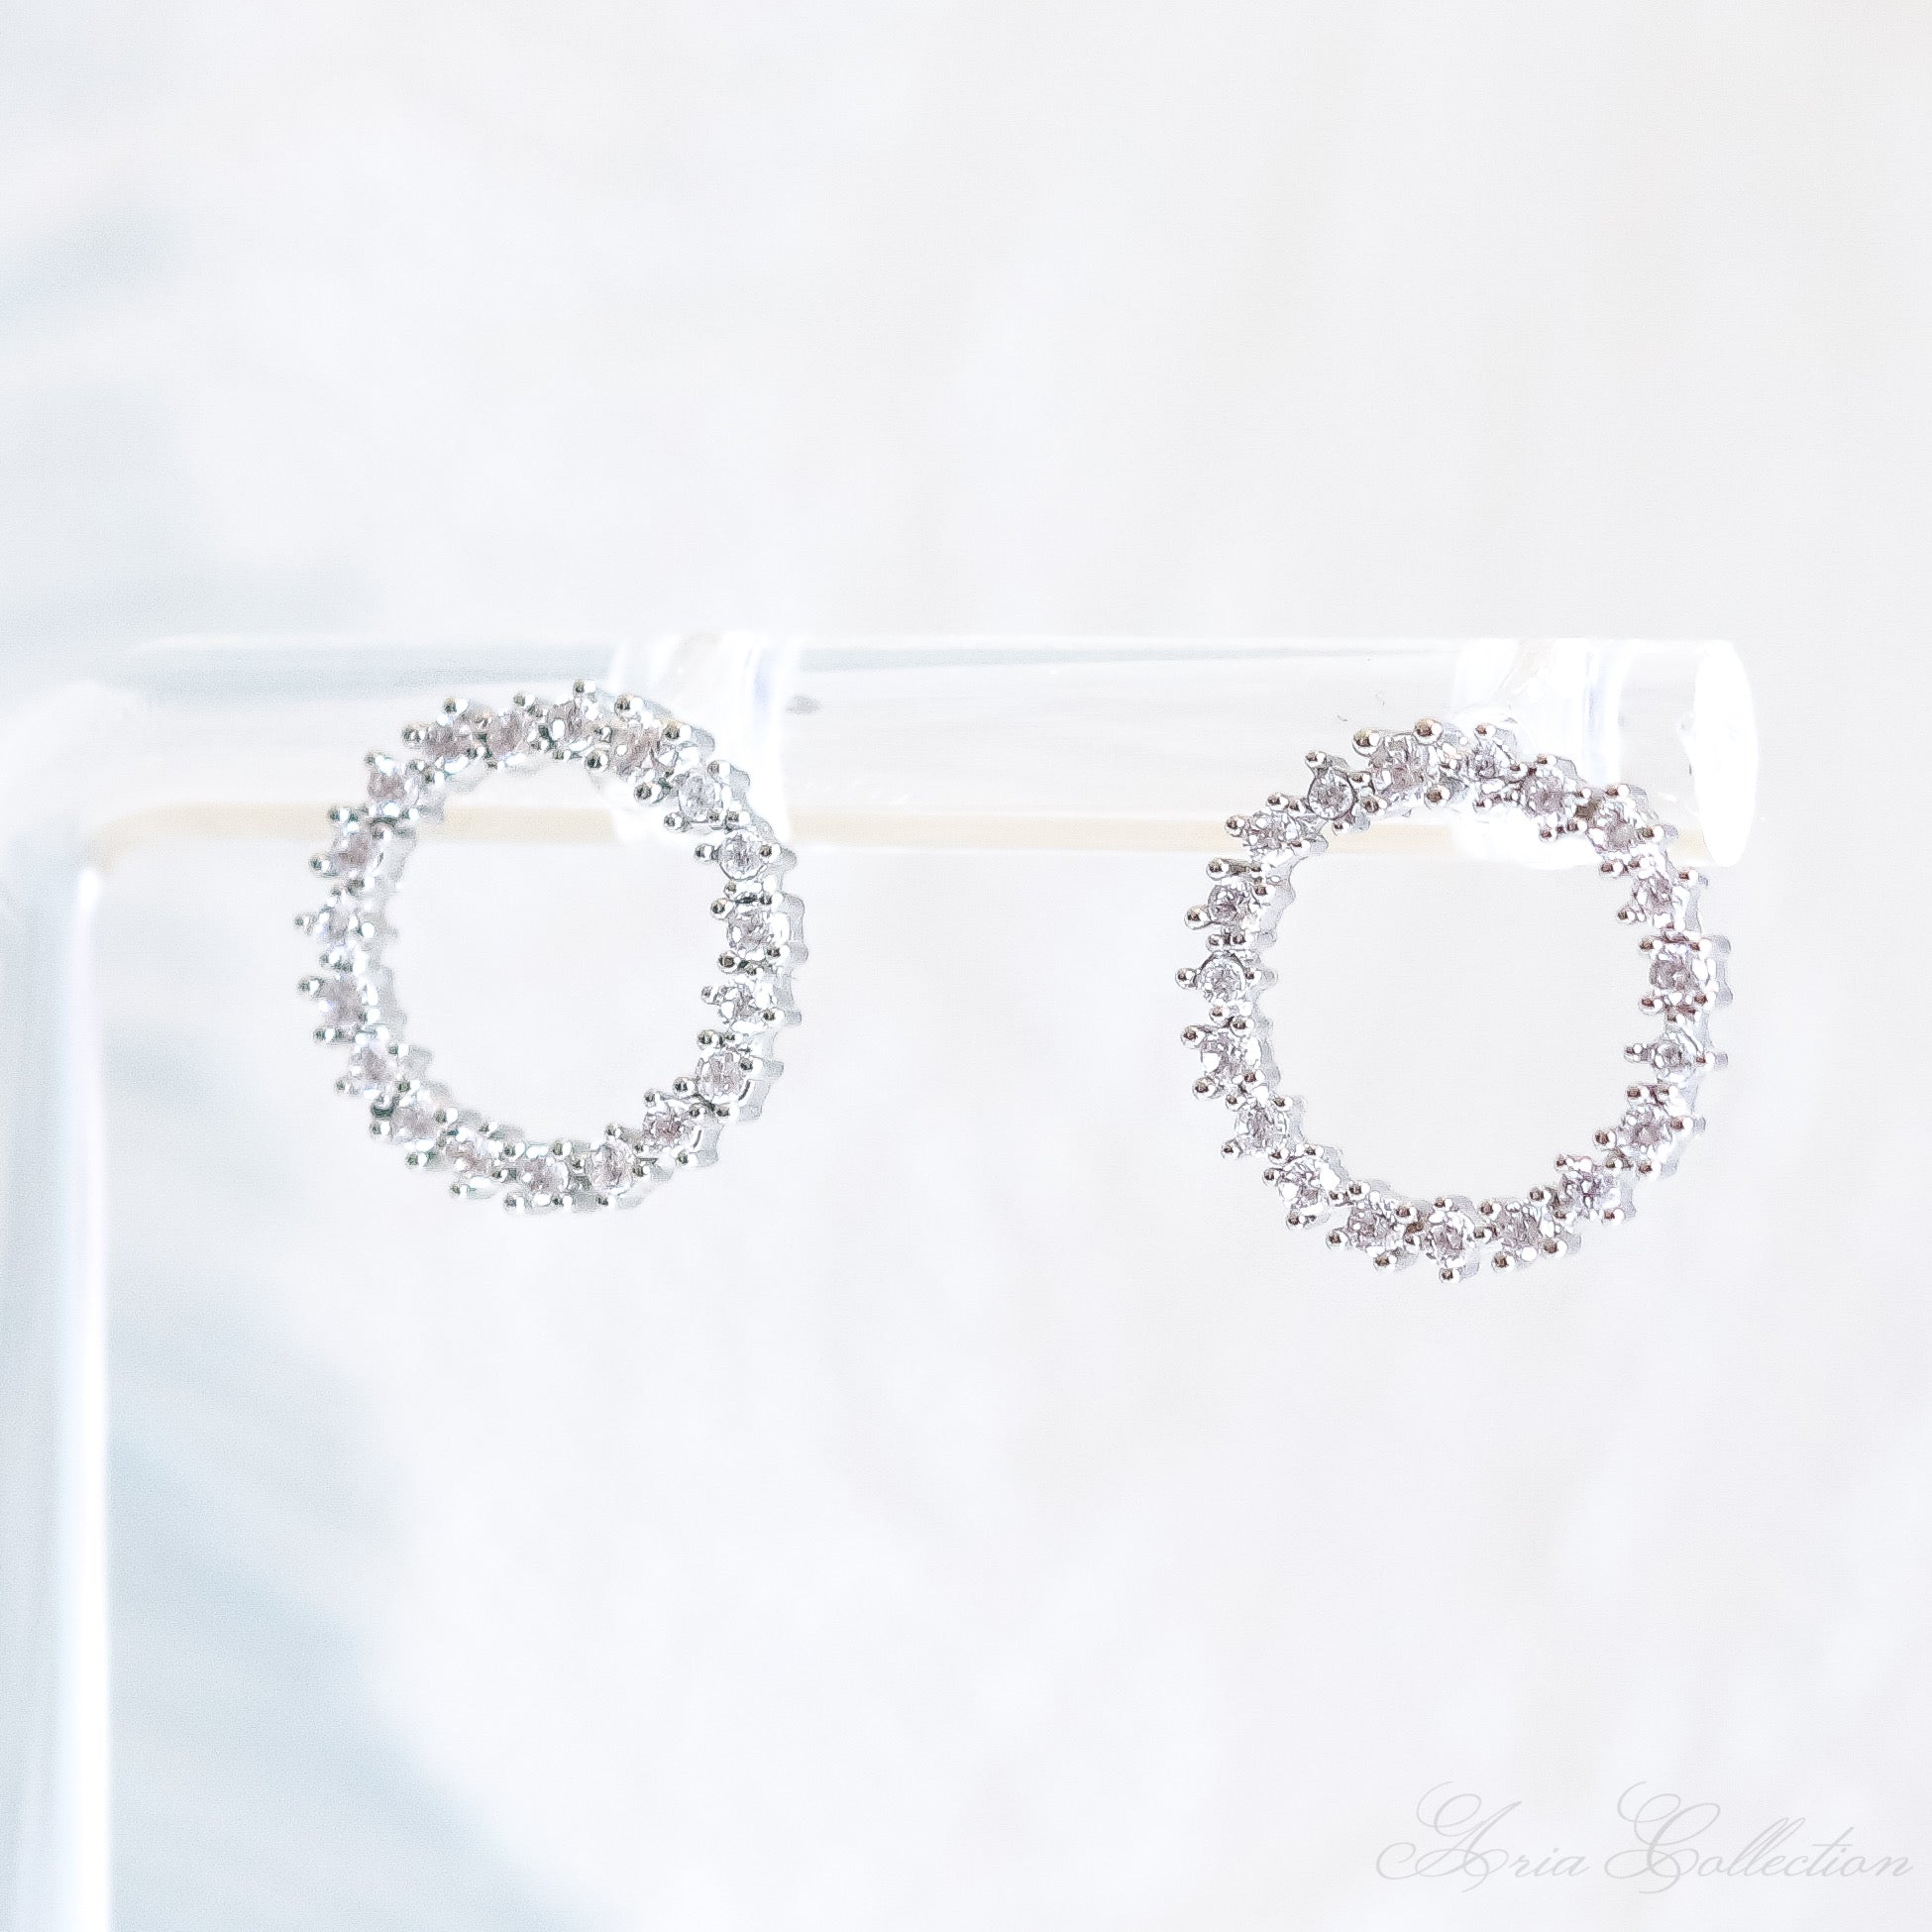 Silver Crystal Circle Stud Earrings